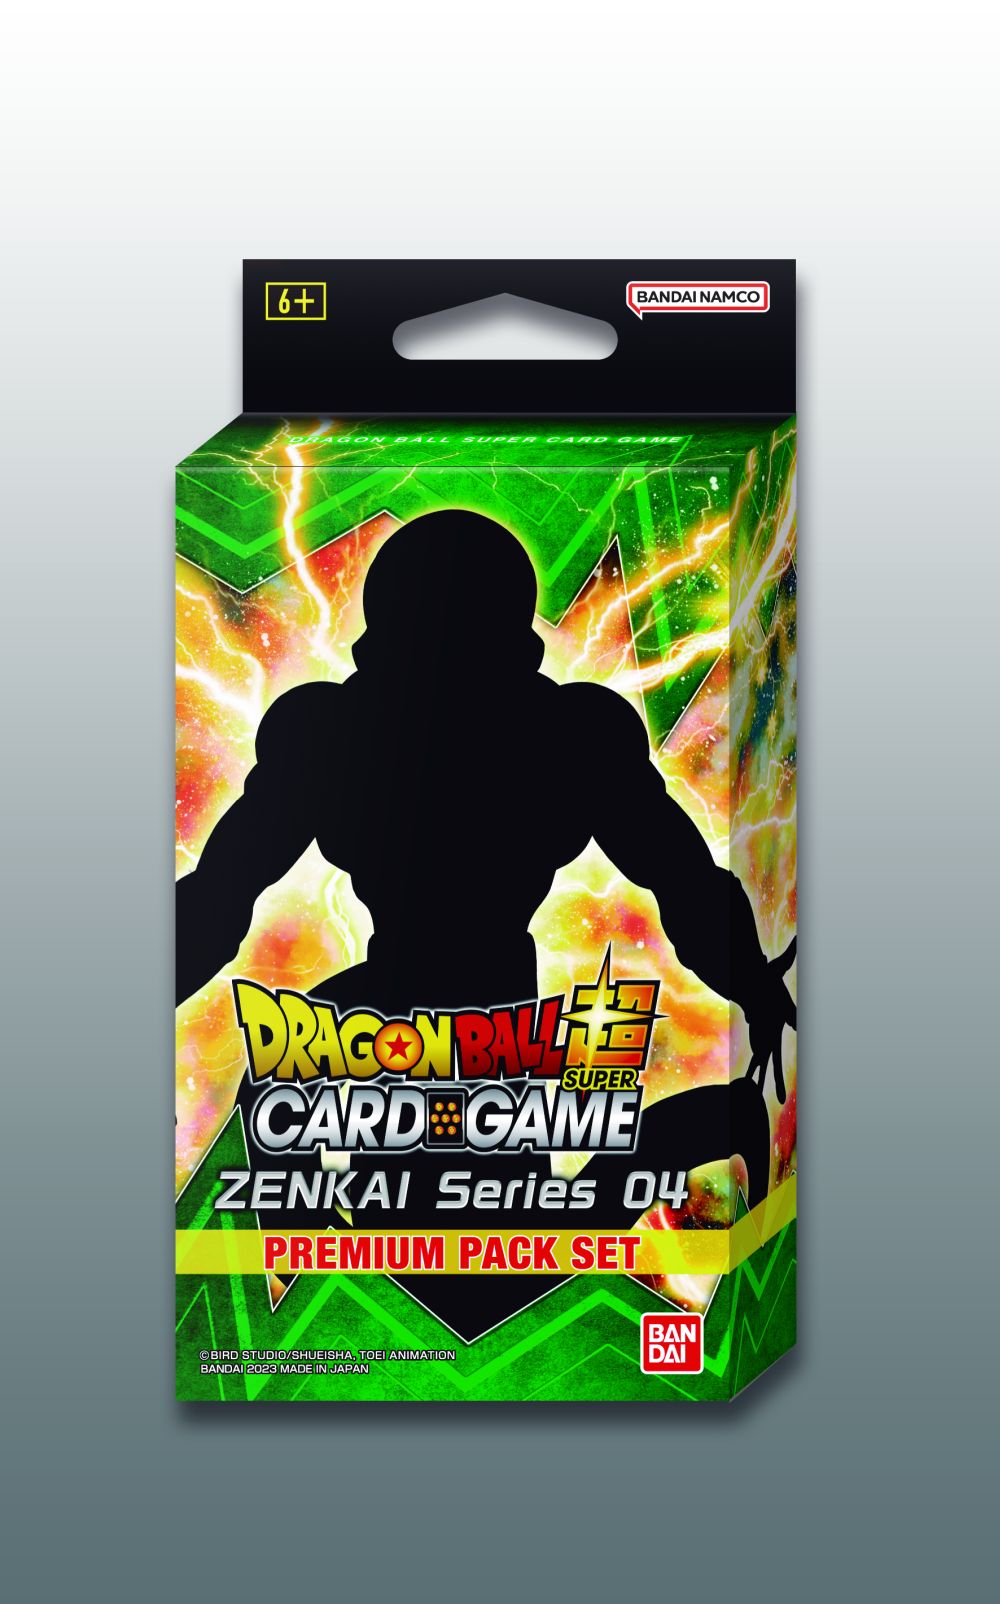 Dragon Ball Super Card Game Zenkai Series 04 Premium Pack Set Display (PP12)